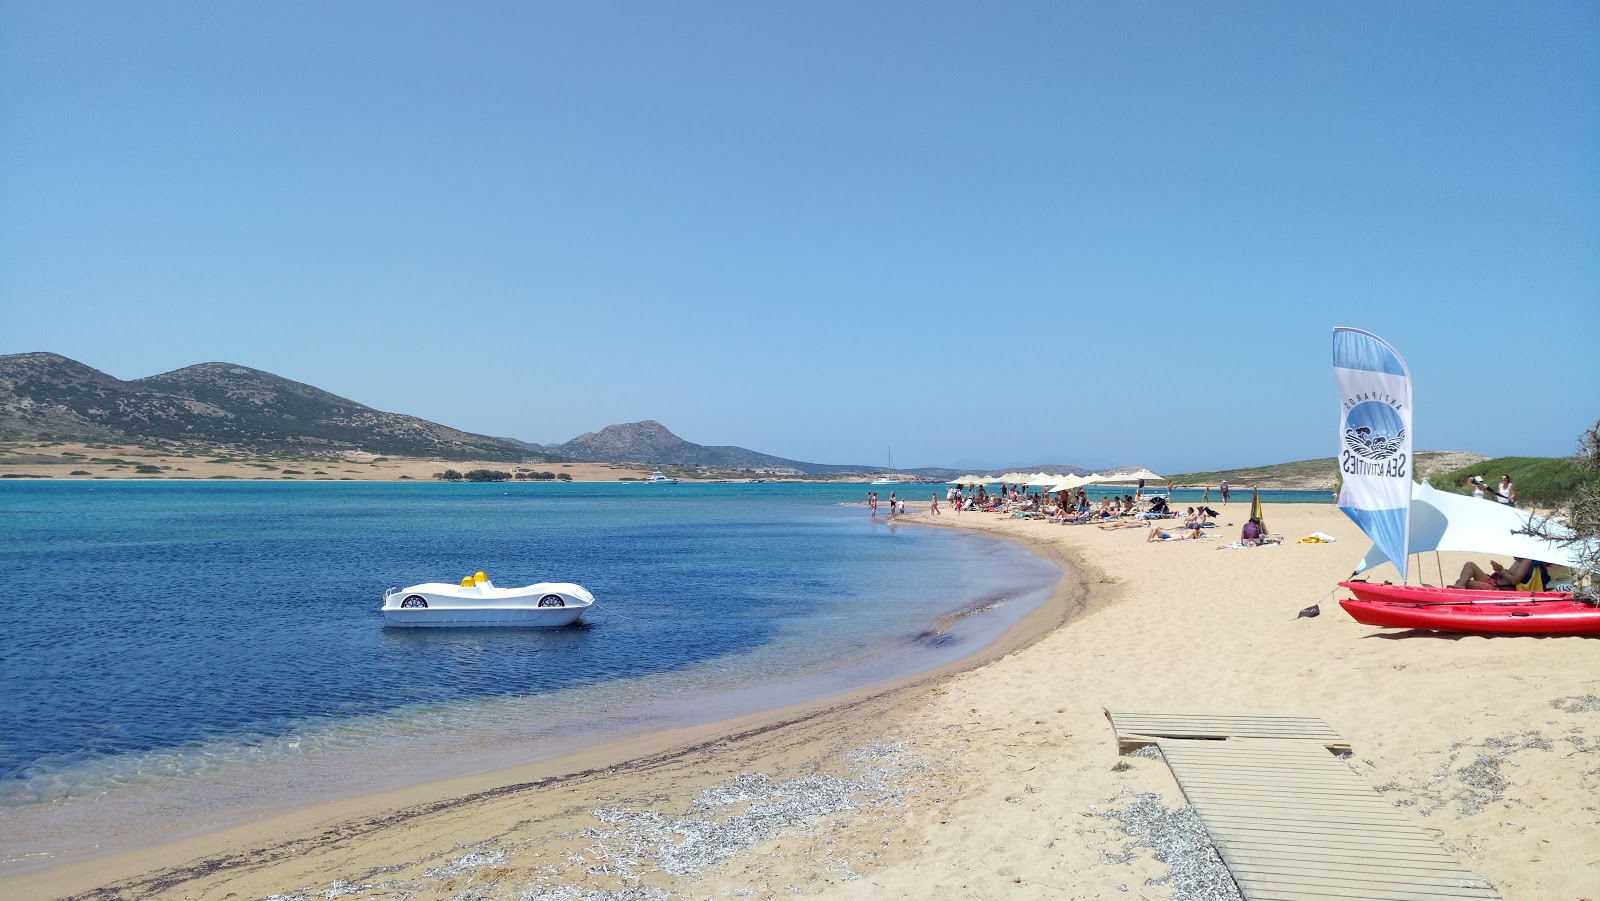 Vathis Volos beach'in fotoğrafı açık yeşil su yüzey ile